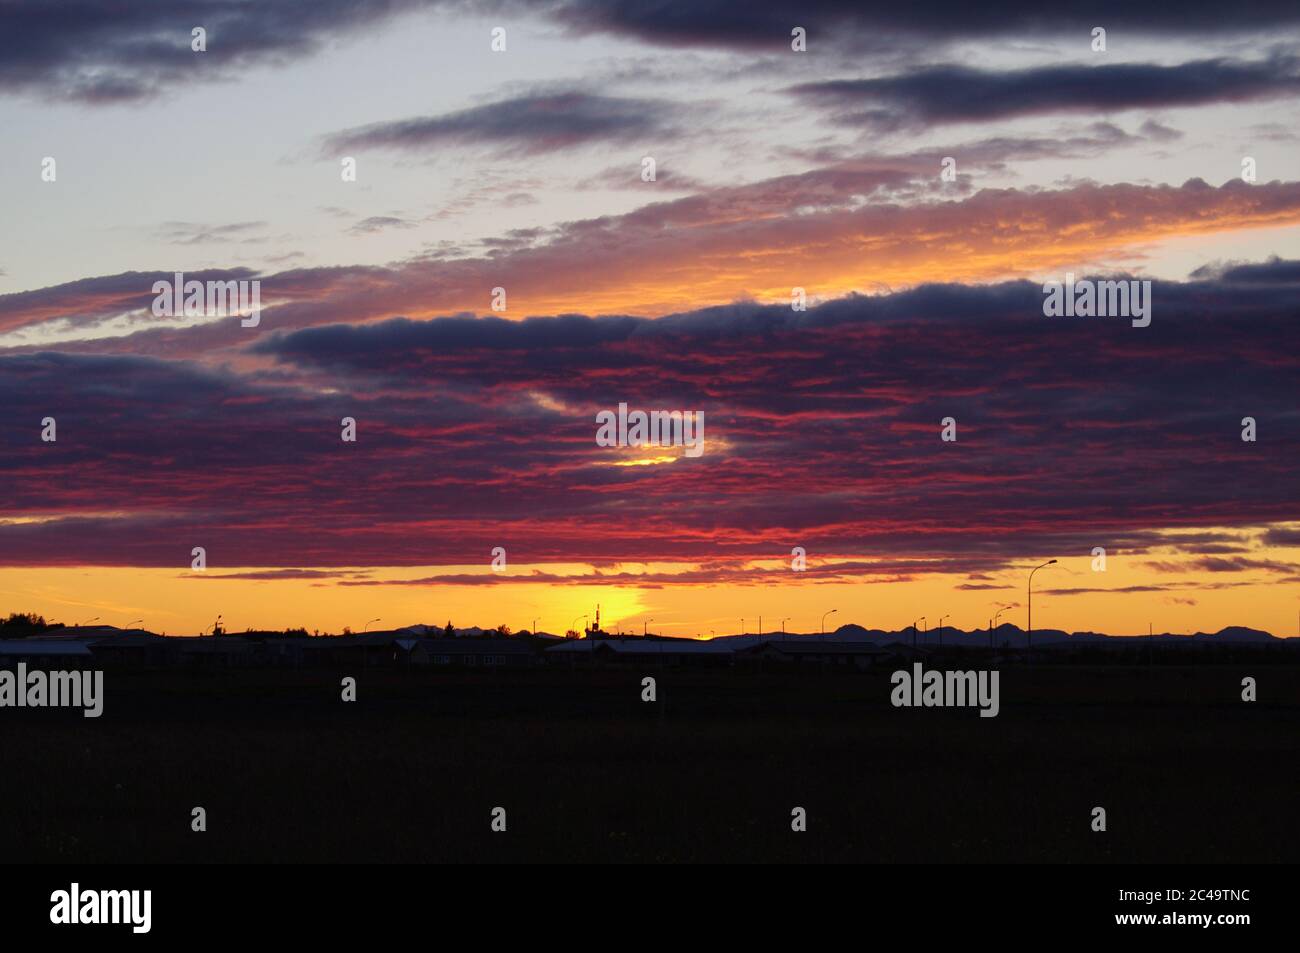 Nuvole magenta al tramonto sull'orizzonte di Silhouette,sequenza di immagini di un tramonto,cieli blu con nuvole magenta al tramonto,sole sole tramonta Foto Stock